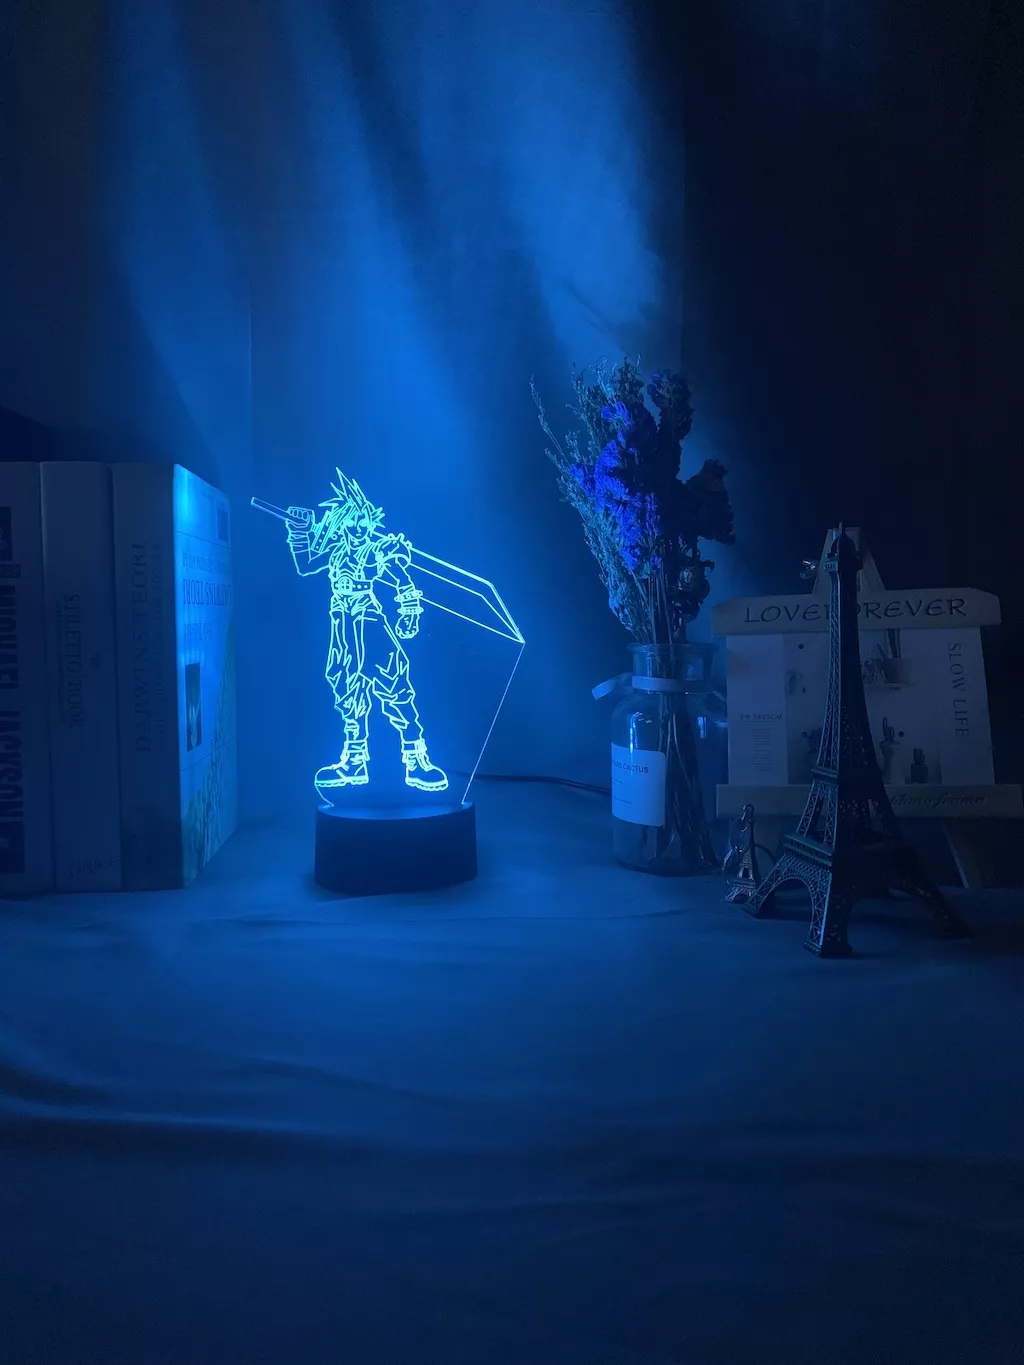 Luminária Final Fantasy luz noturna em led 3d, crianças, luz noturna colorida para decoração de quarto, usb, lâmpada de mesa, jogo final, presente fantasia 1